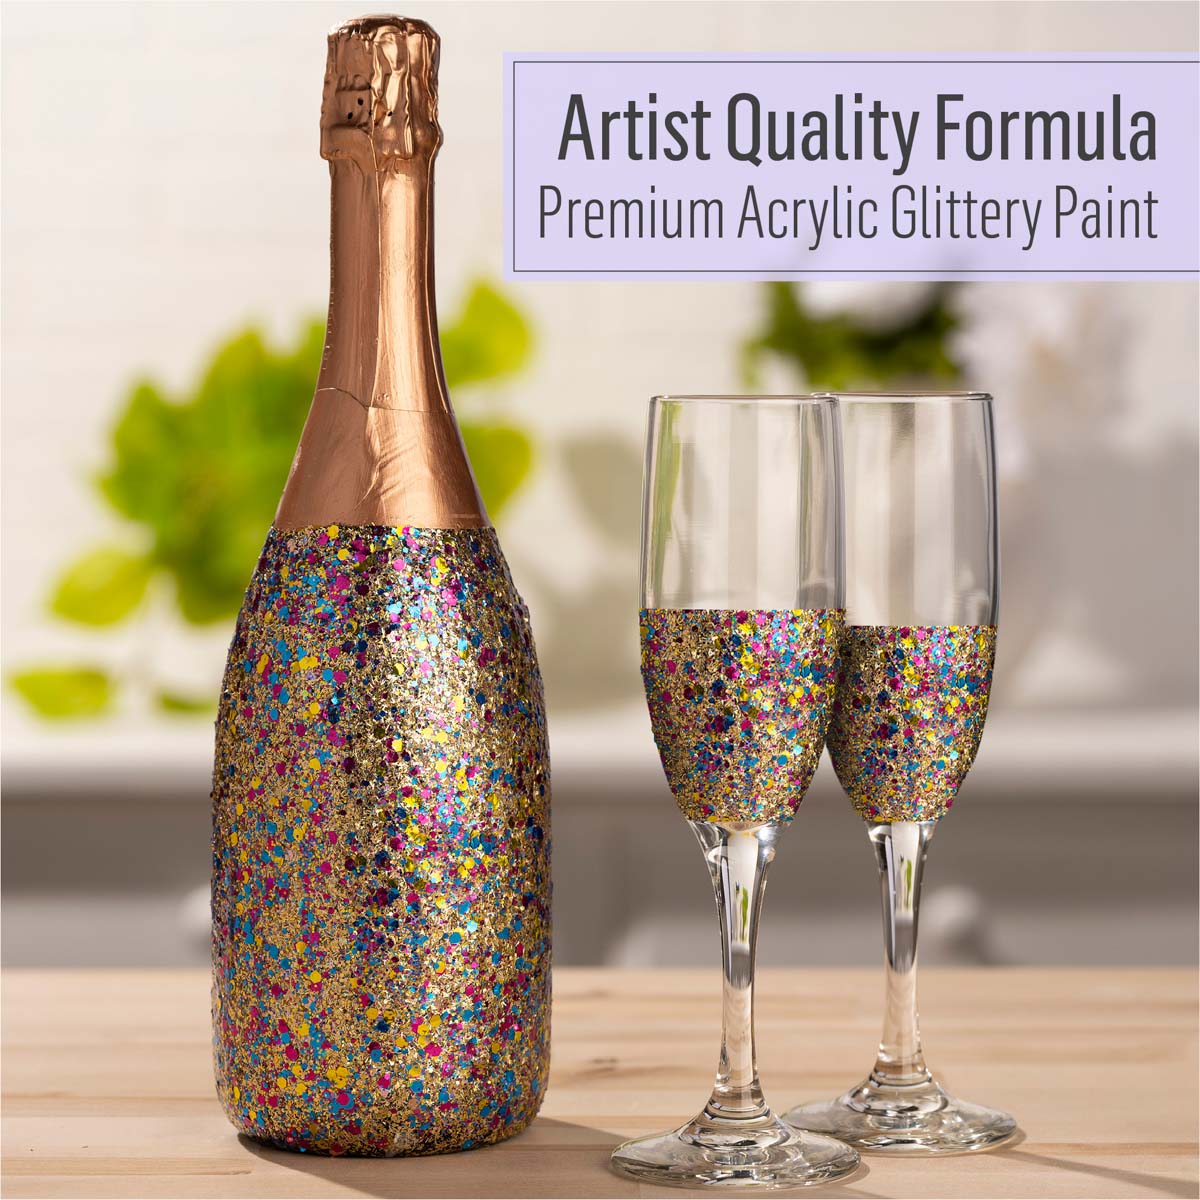 FolkArt ® Glitterific POP™ Acrylic Paint - Birthday Party, 2 oz. - 12001